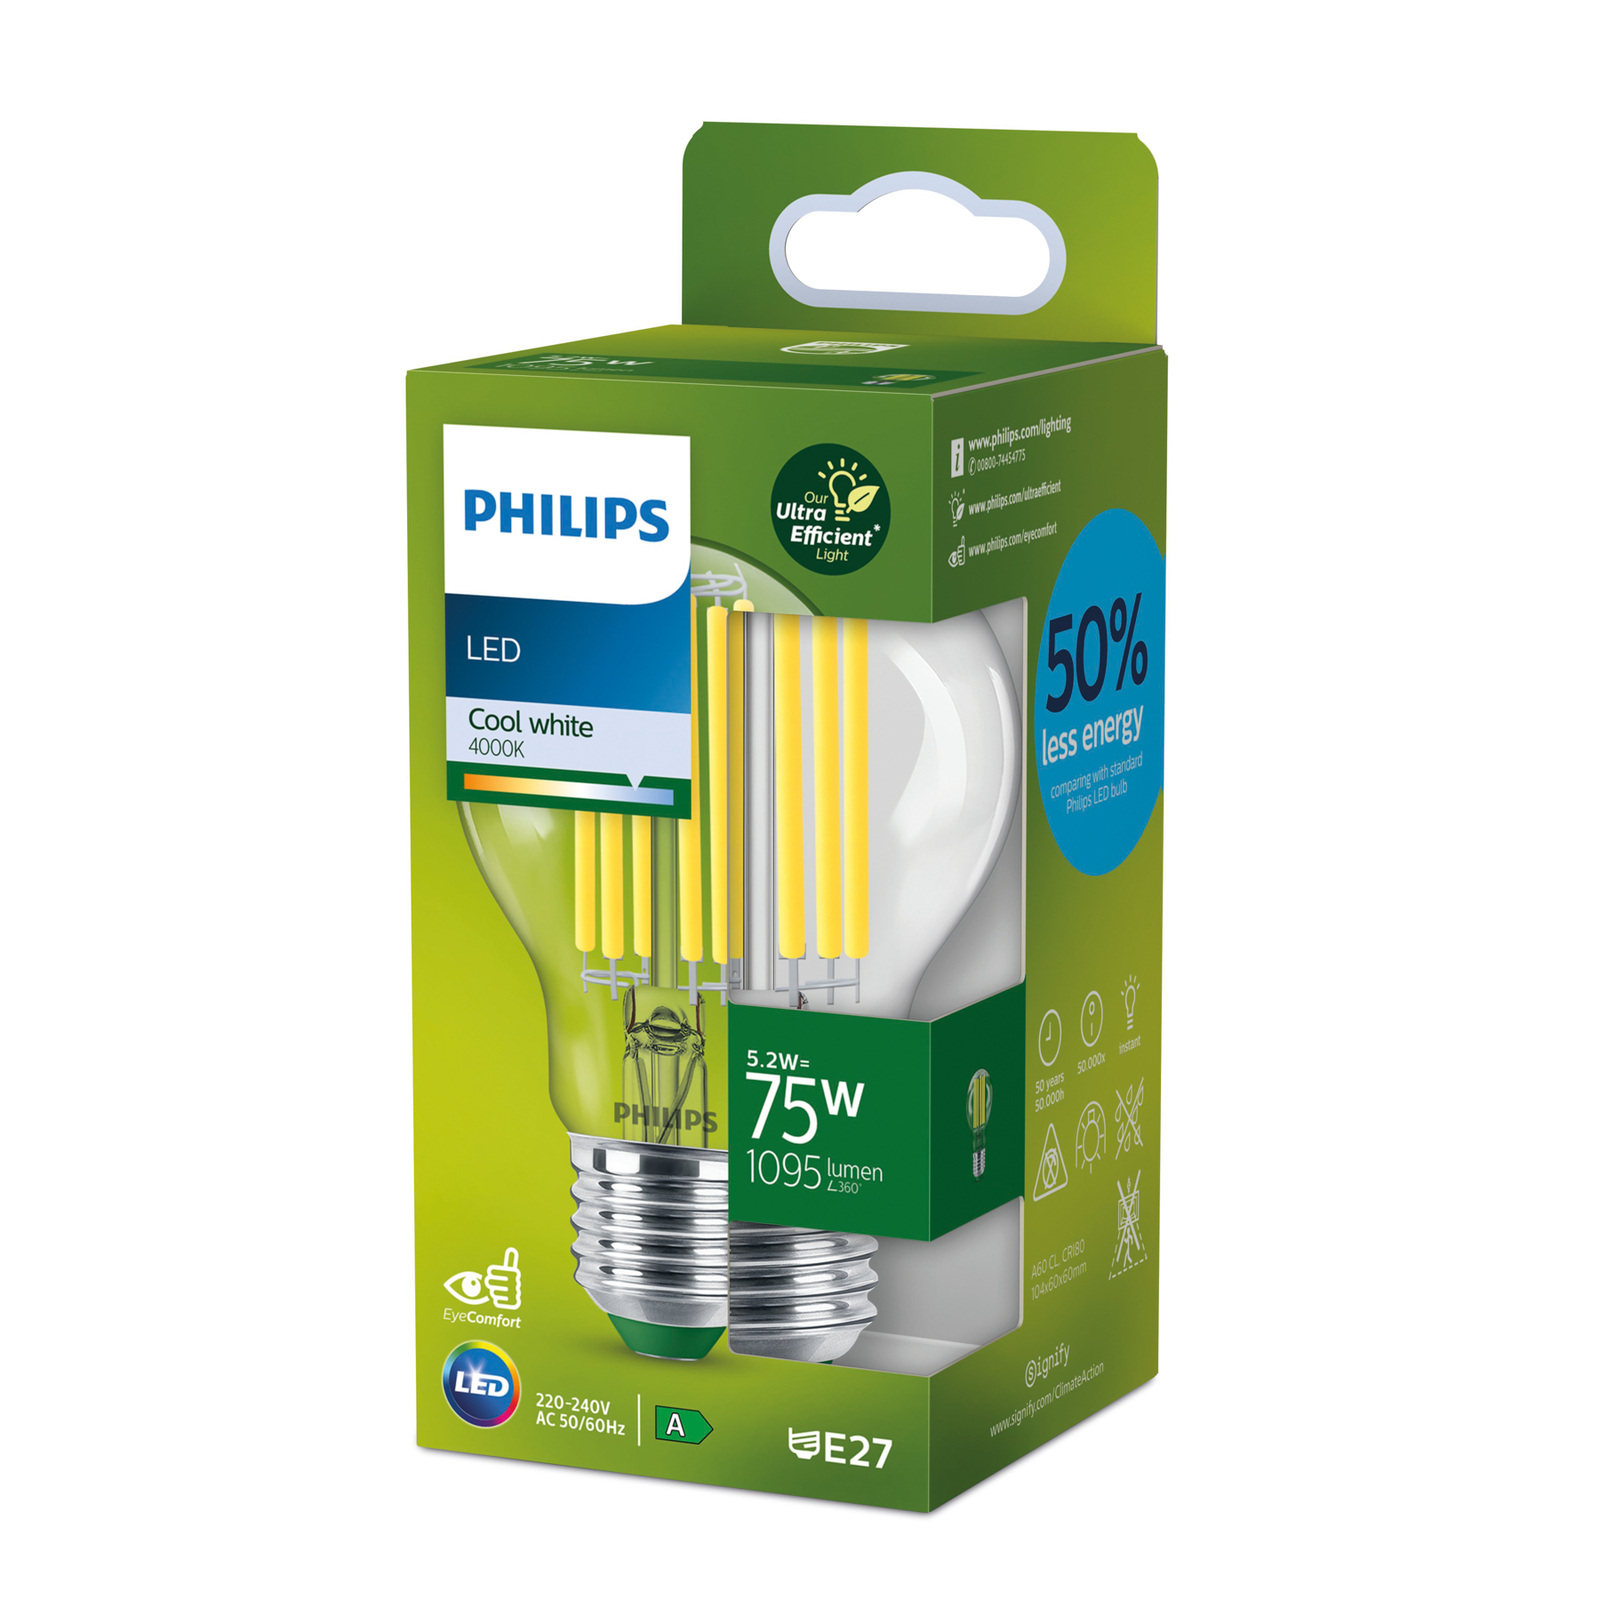 Philips E27 LED žiarovka 5,2W 1095lm 4000K číra